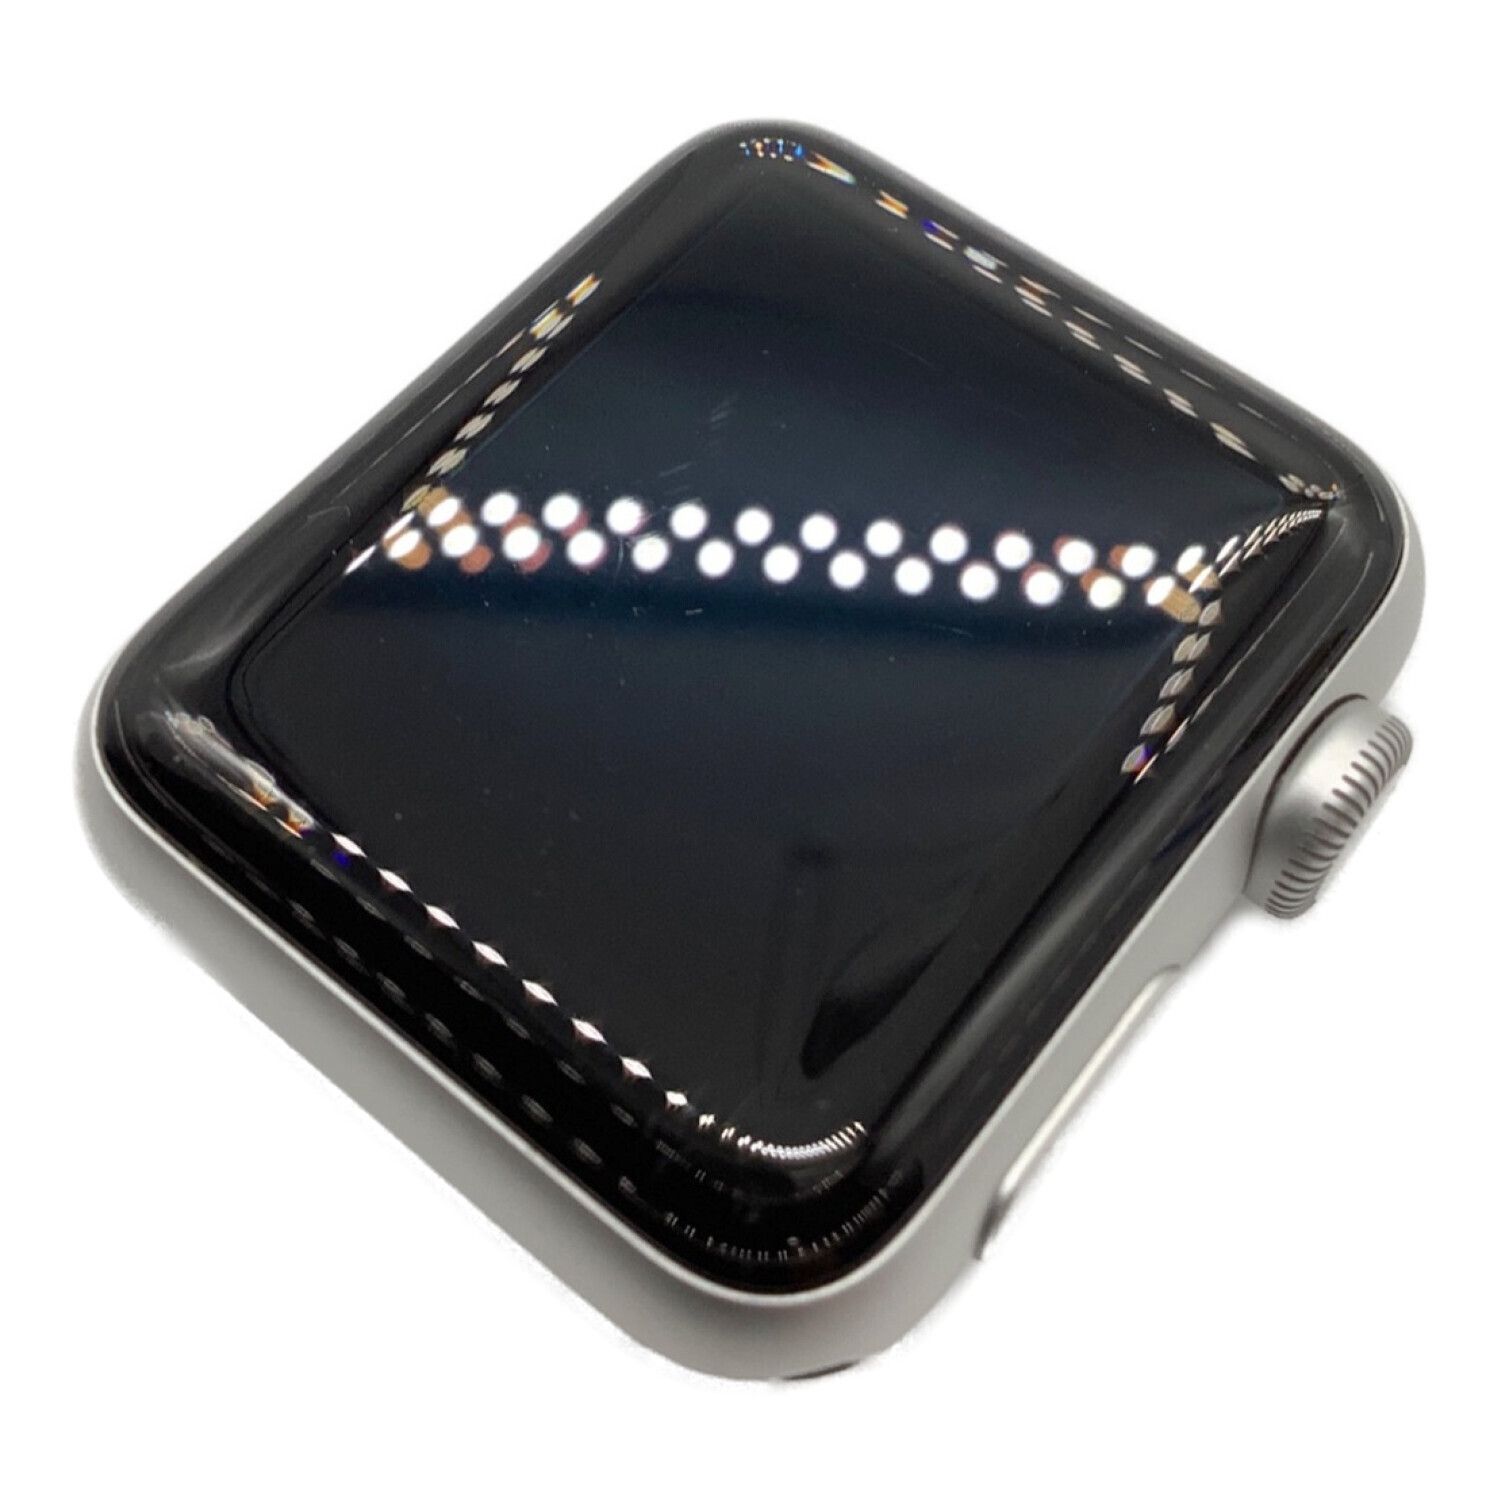 Apple (アップル) Apple Watch Series 3 本体のみ WR-50M GPSモデル 